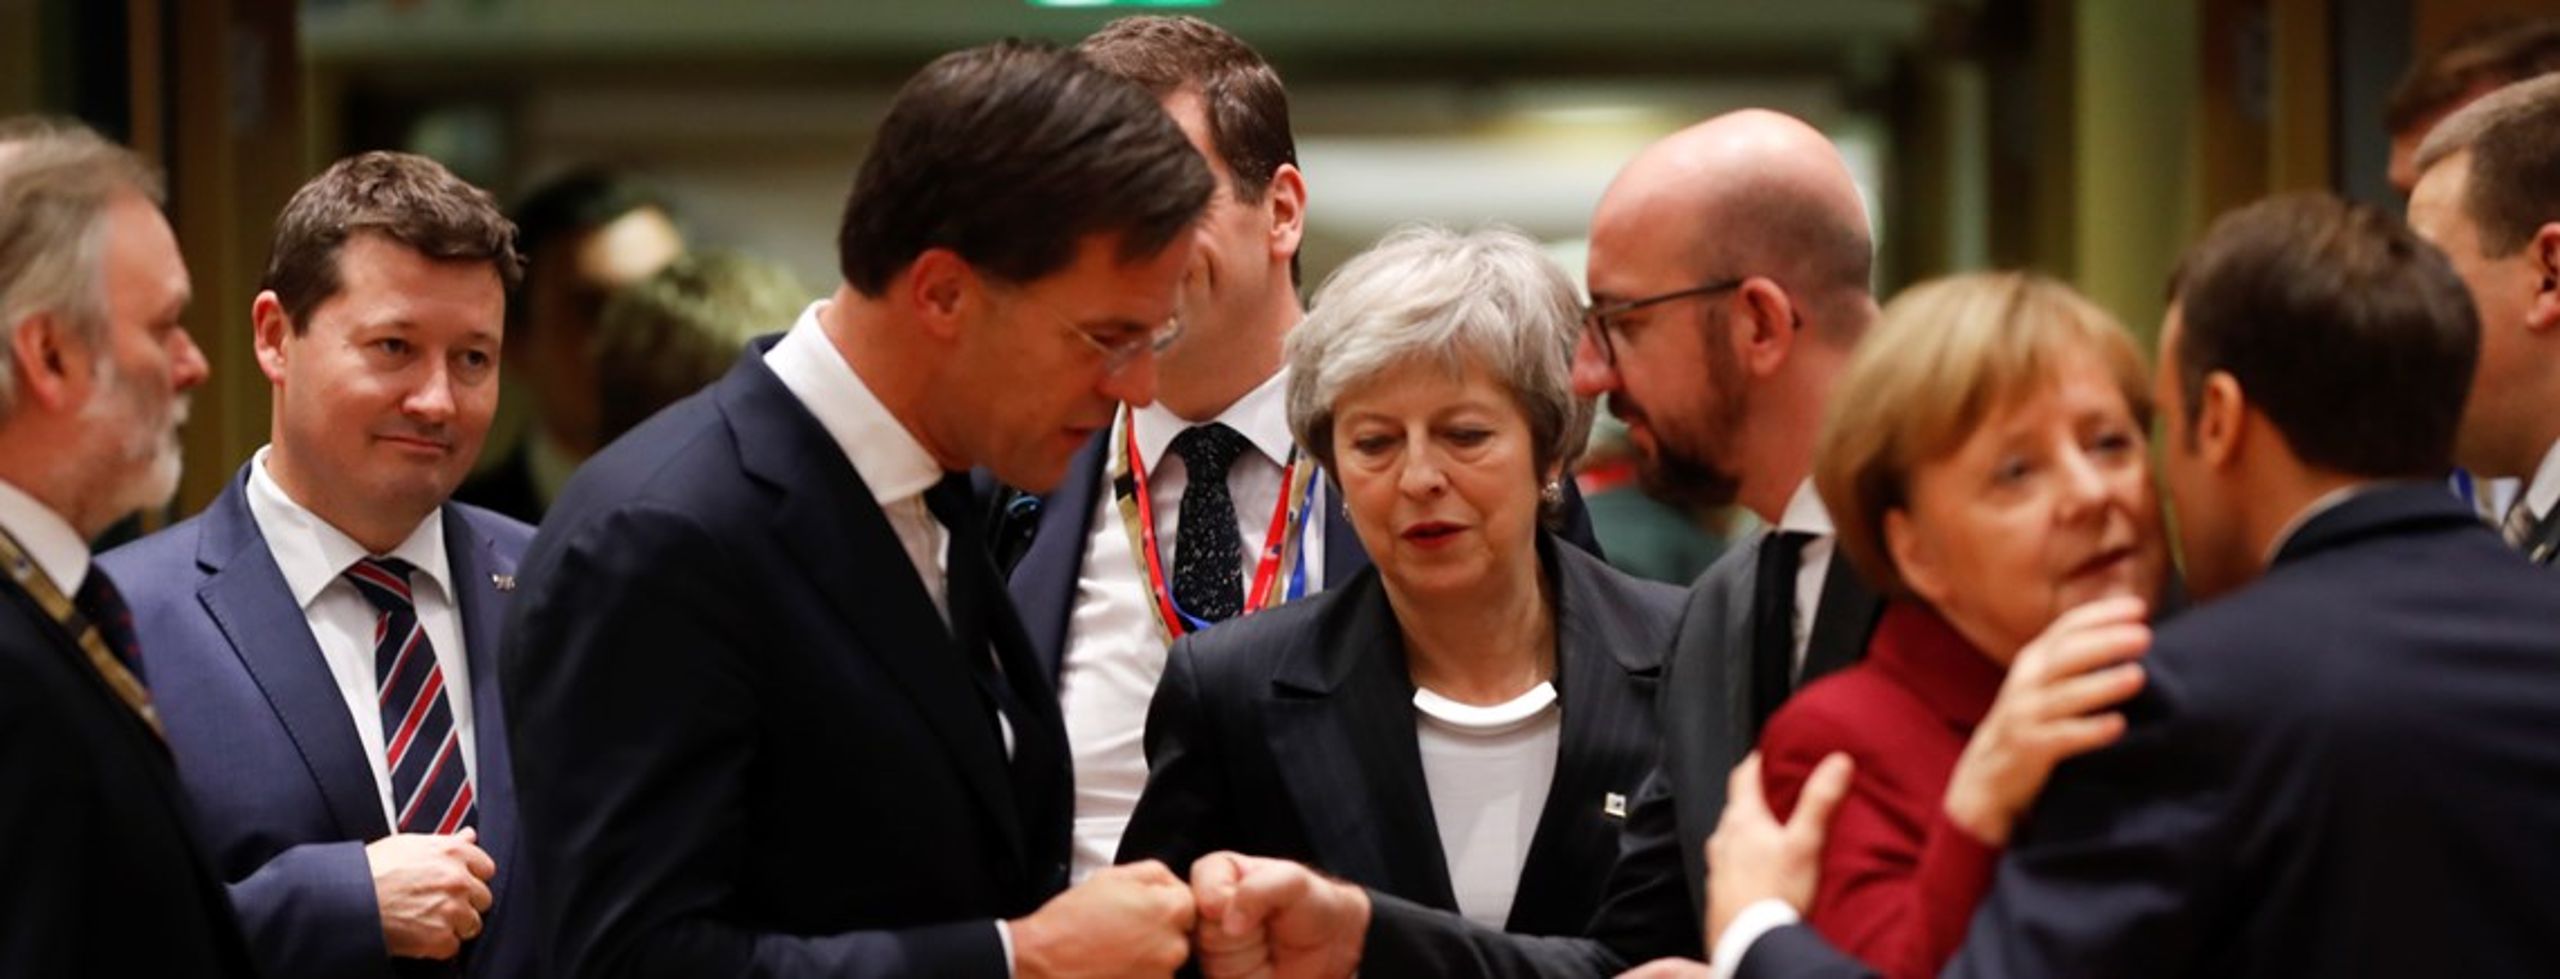 <div>Den britiske premierminister, Theresa May (i midten), ankommer til rundbordssamtale under EU-topmøde i Bruxelles 13. december 2018. EU-lederne var samlet til et todages topmøde med fokus på Brexit-forhandlingerne. Til højre hilser den franske præsident, Emmanuel Macron, på den tyske kansler, Angela Merkel.</div>